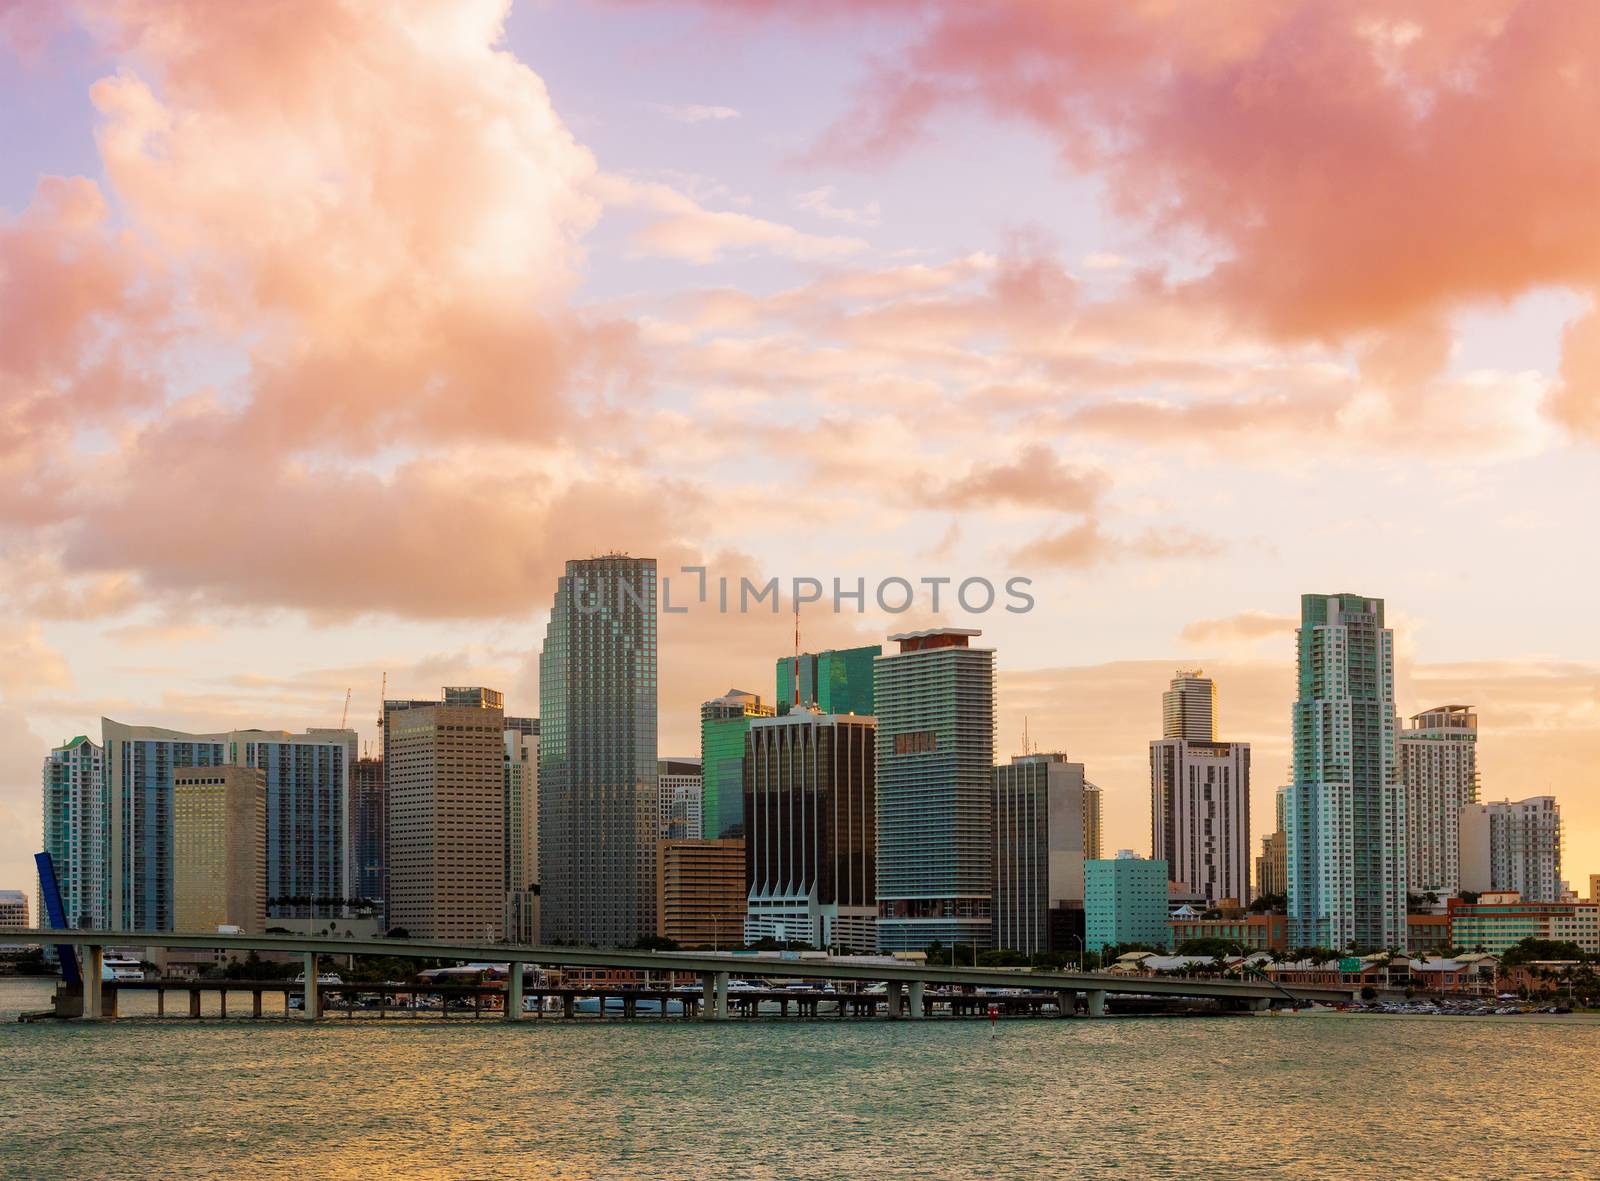 Downtown Miami, Florida, USA, seen from MacArthur Causeway at sunset.